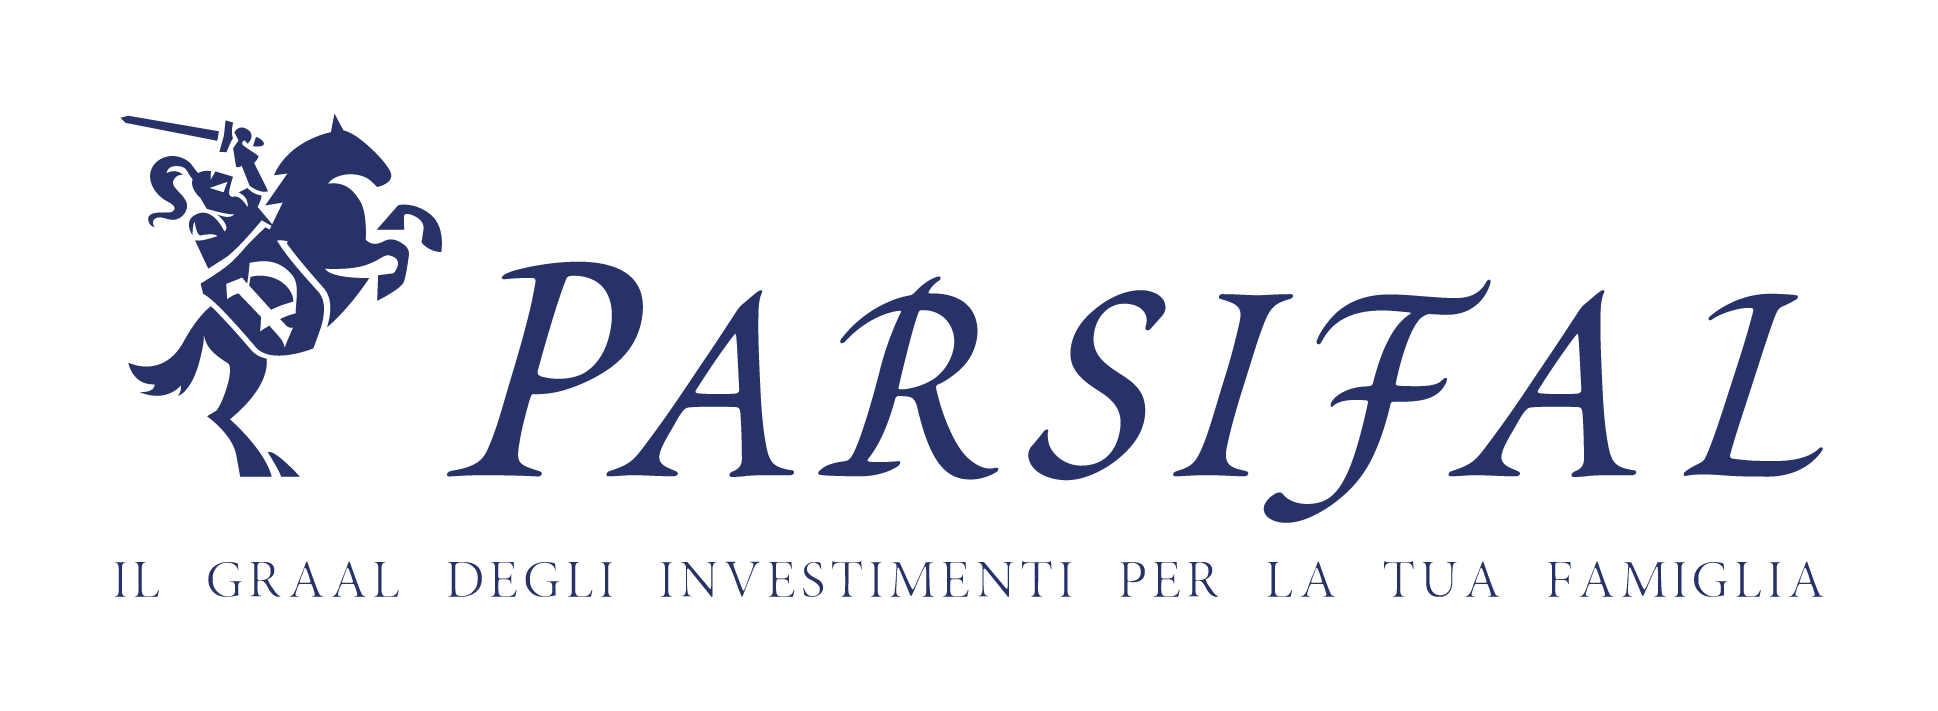 Parsifal - Il Graal degli investimenti per la tua famiglia